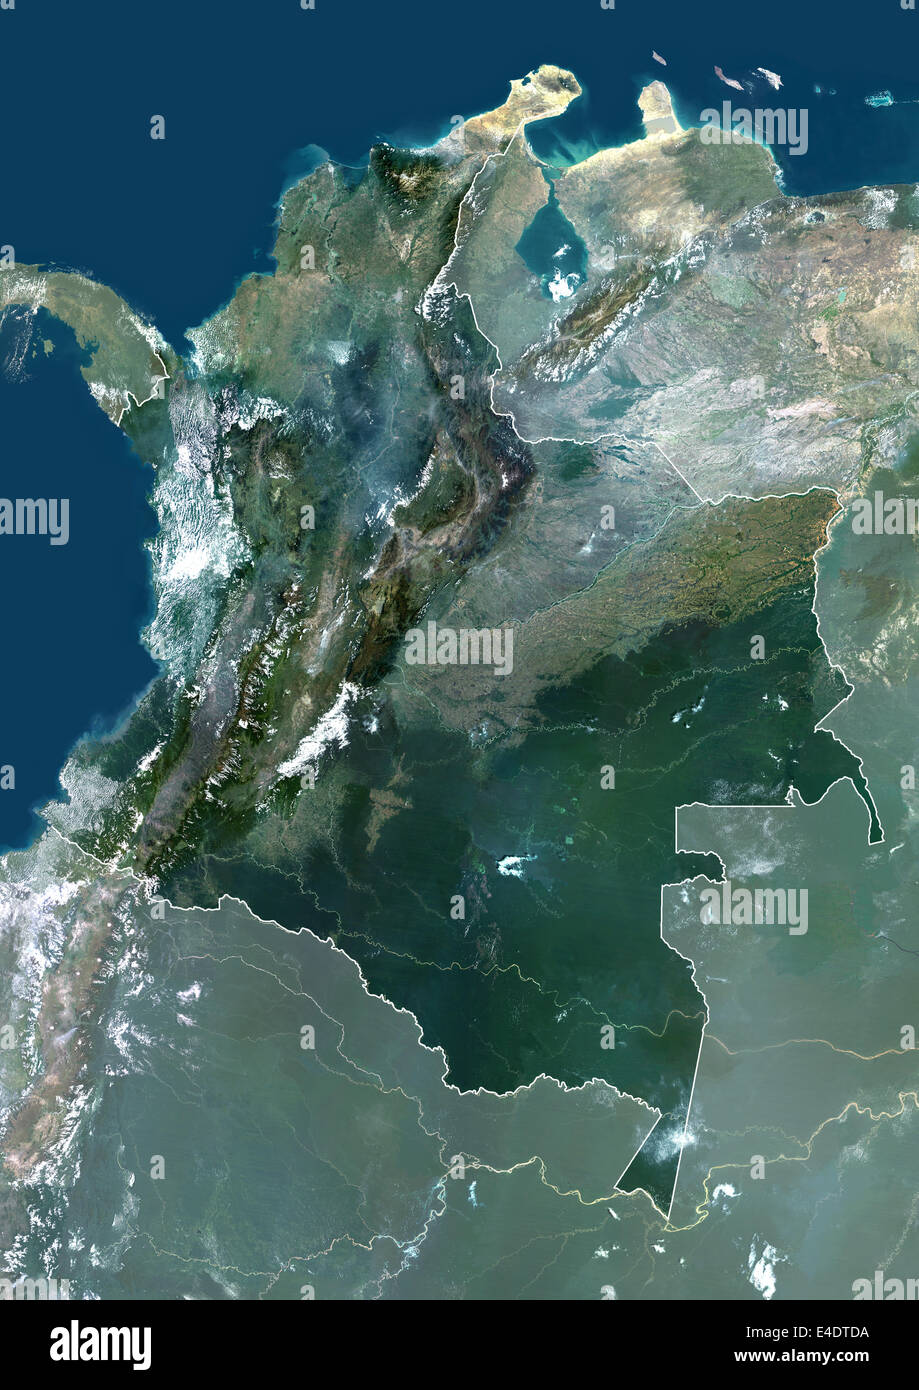 Vista satelital colombia fotografías e imágenes de alta resolución - Alamy